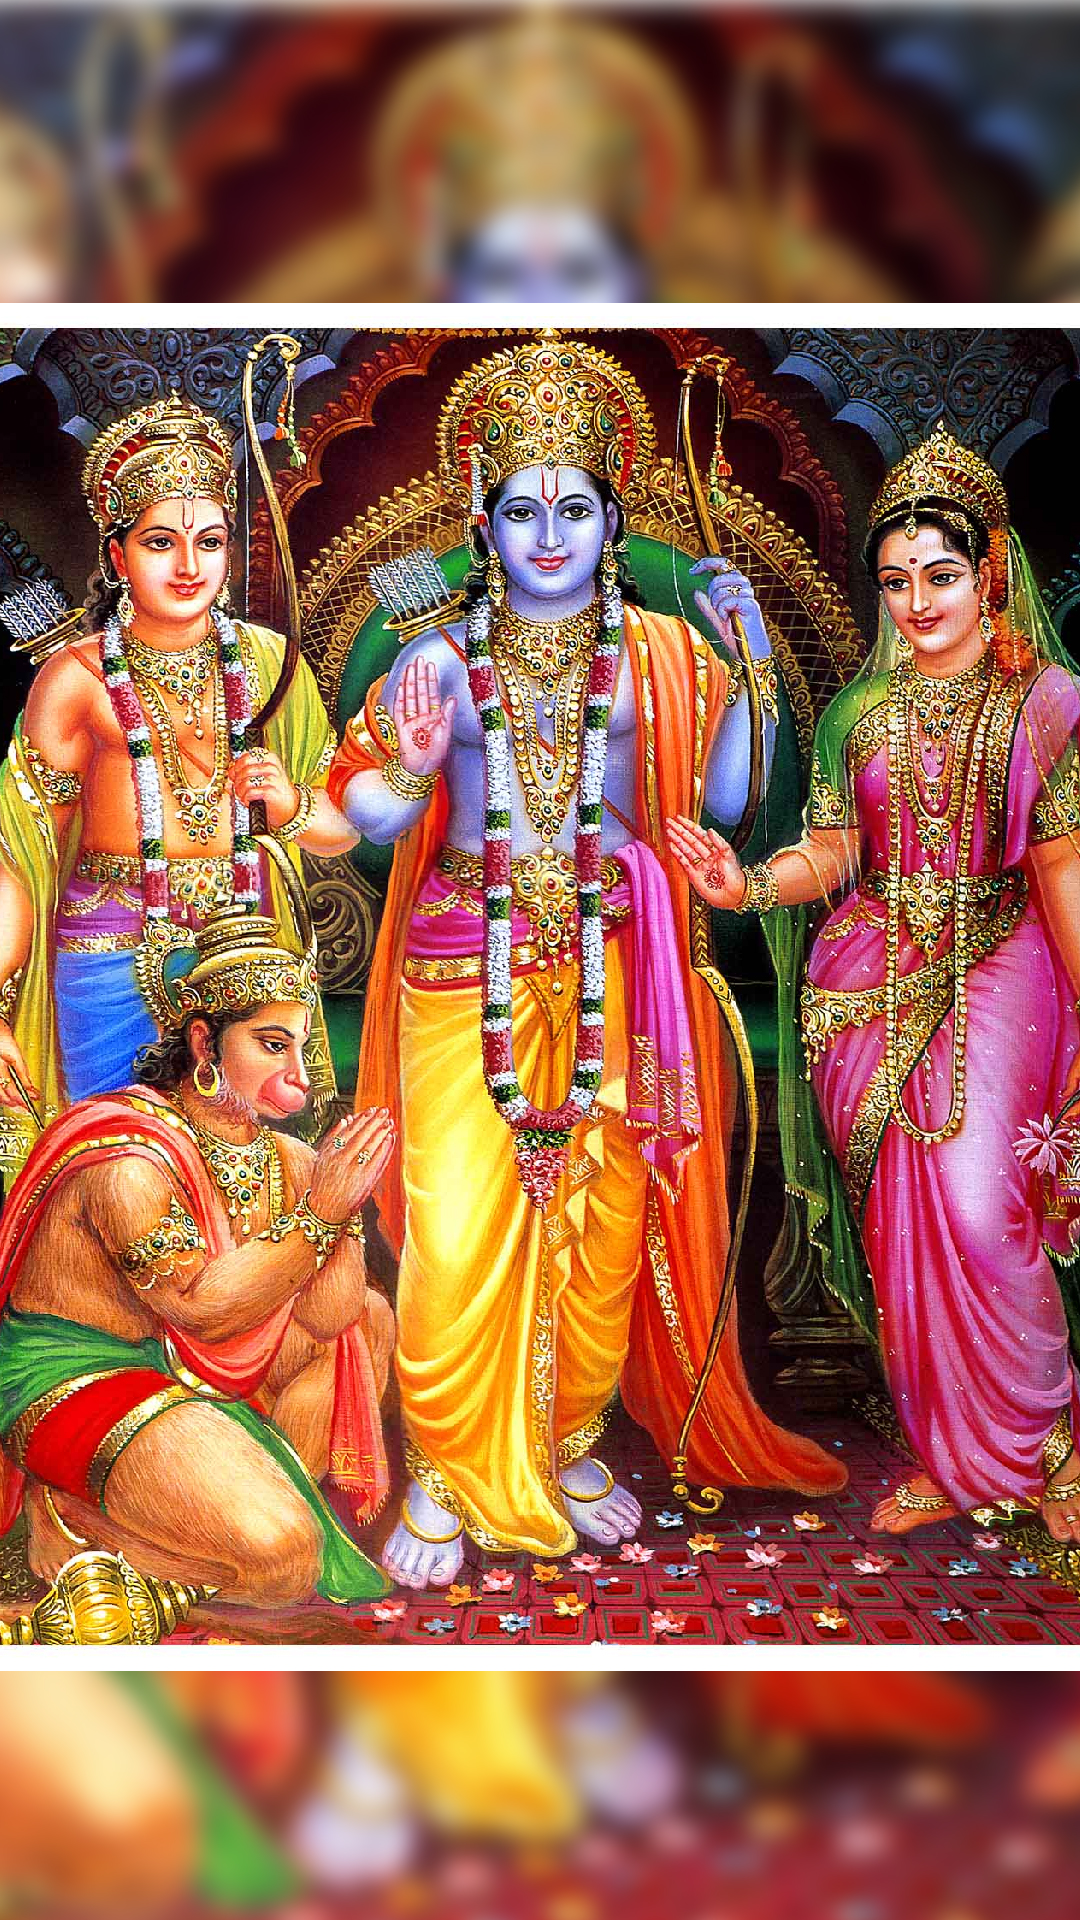 राम नवमी के दिन भगवान राम को जरूर चढ़ाएं ये चीजें